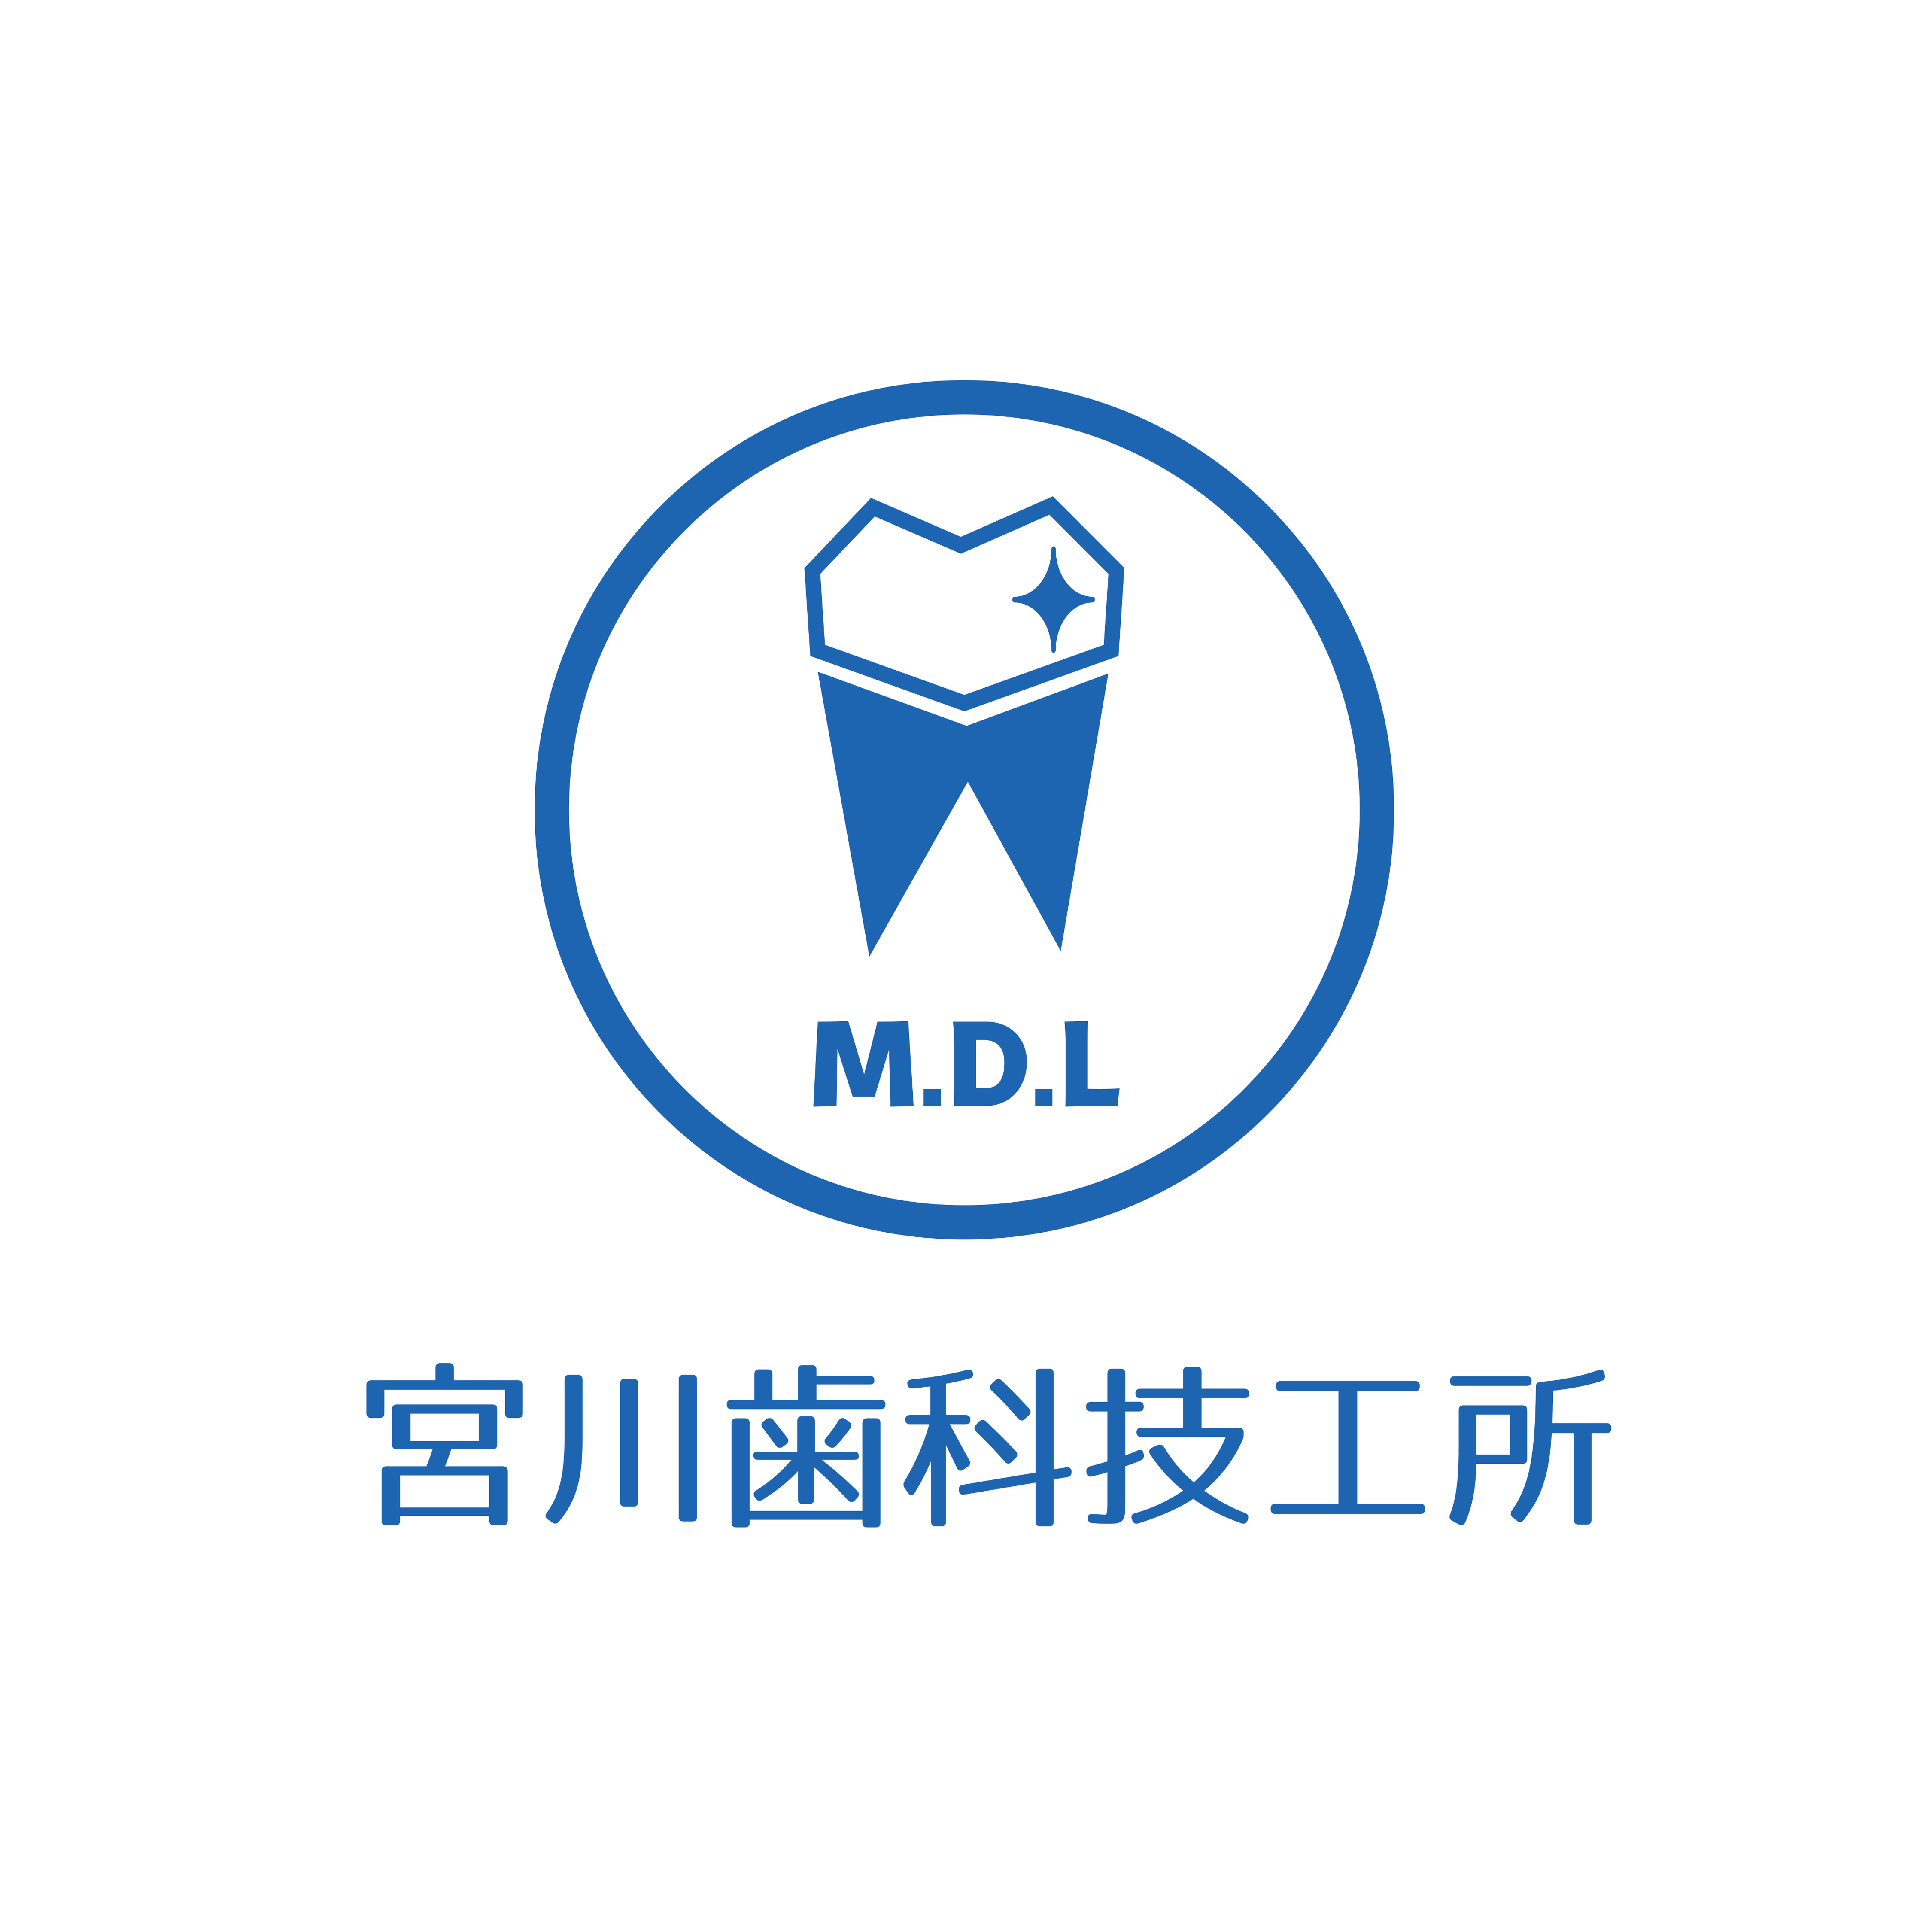 宮川歯科技工所様のロゴ